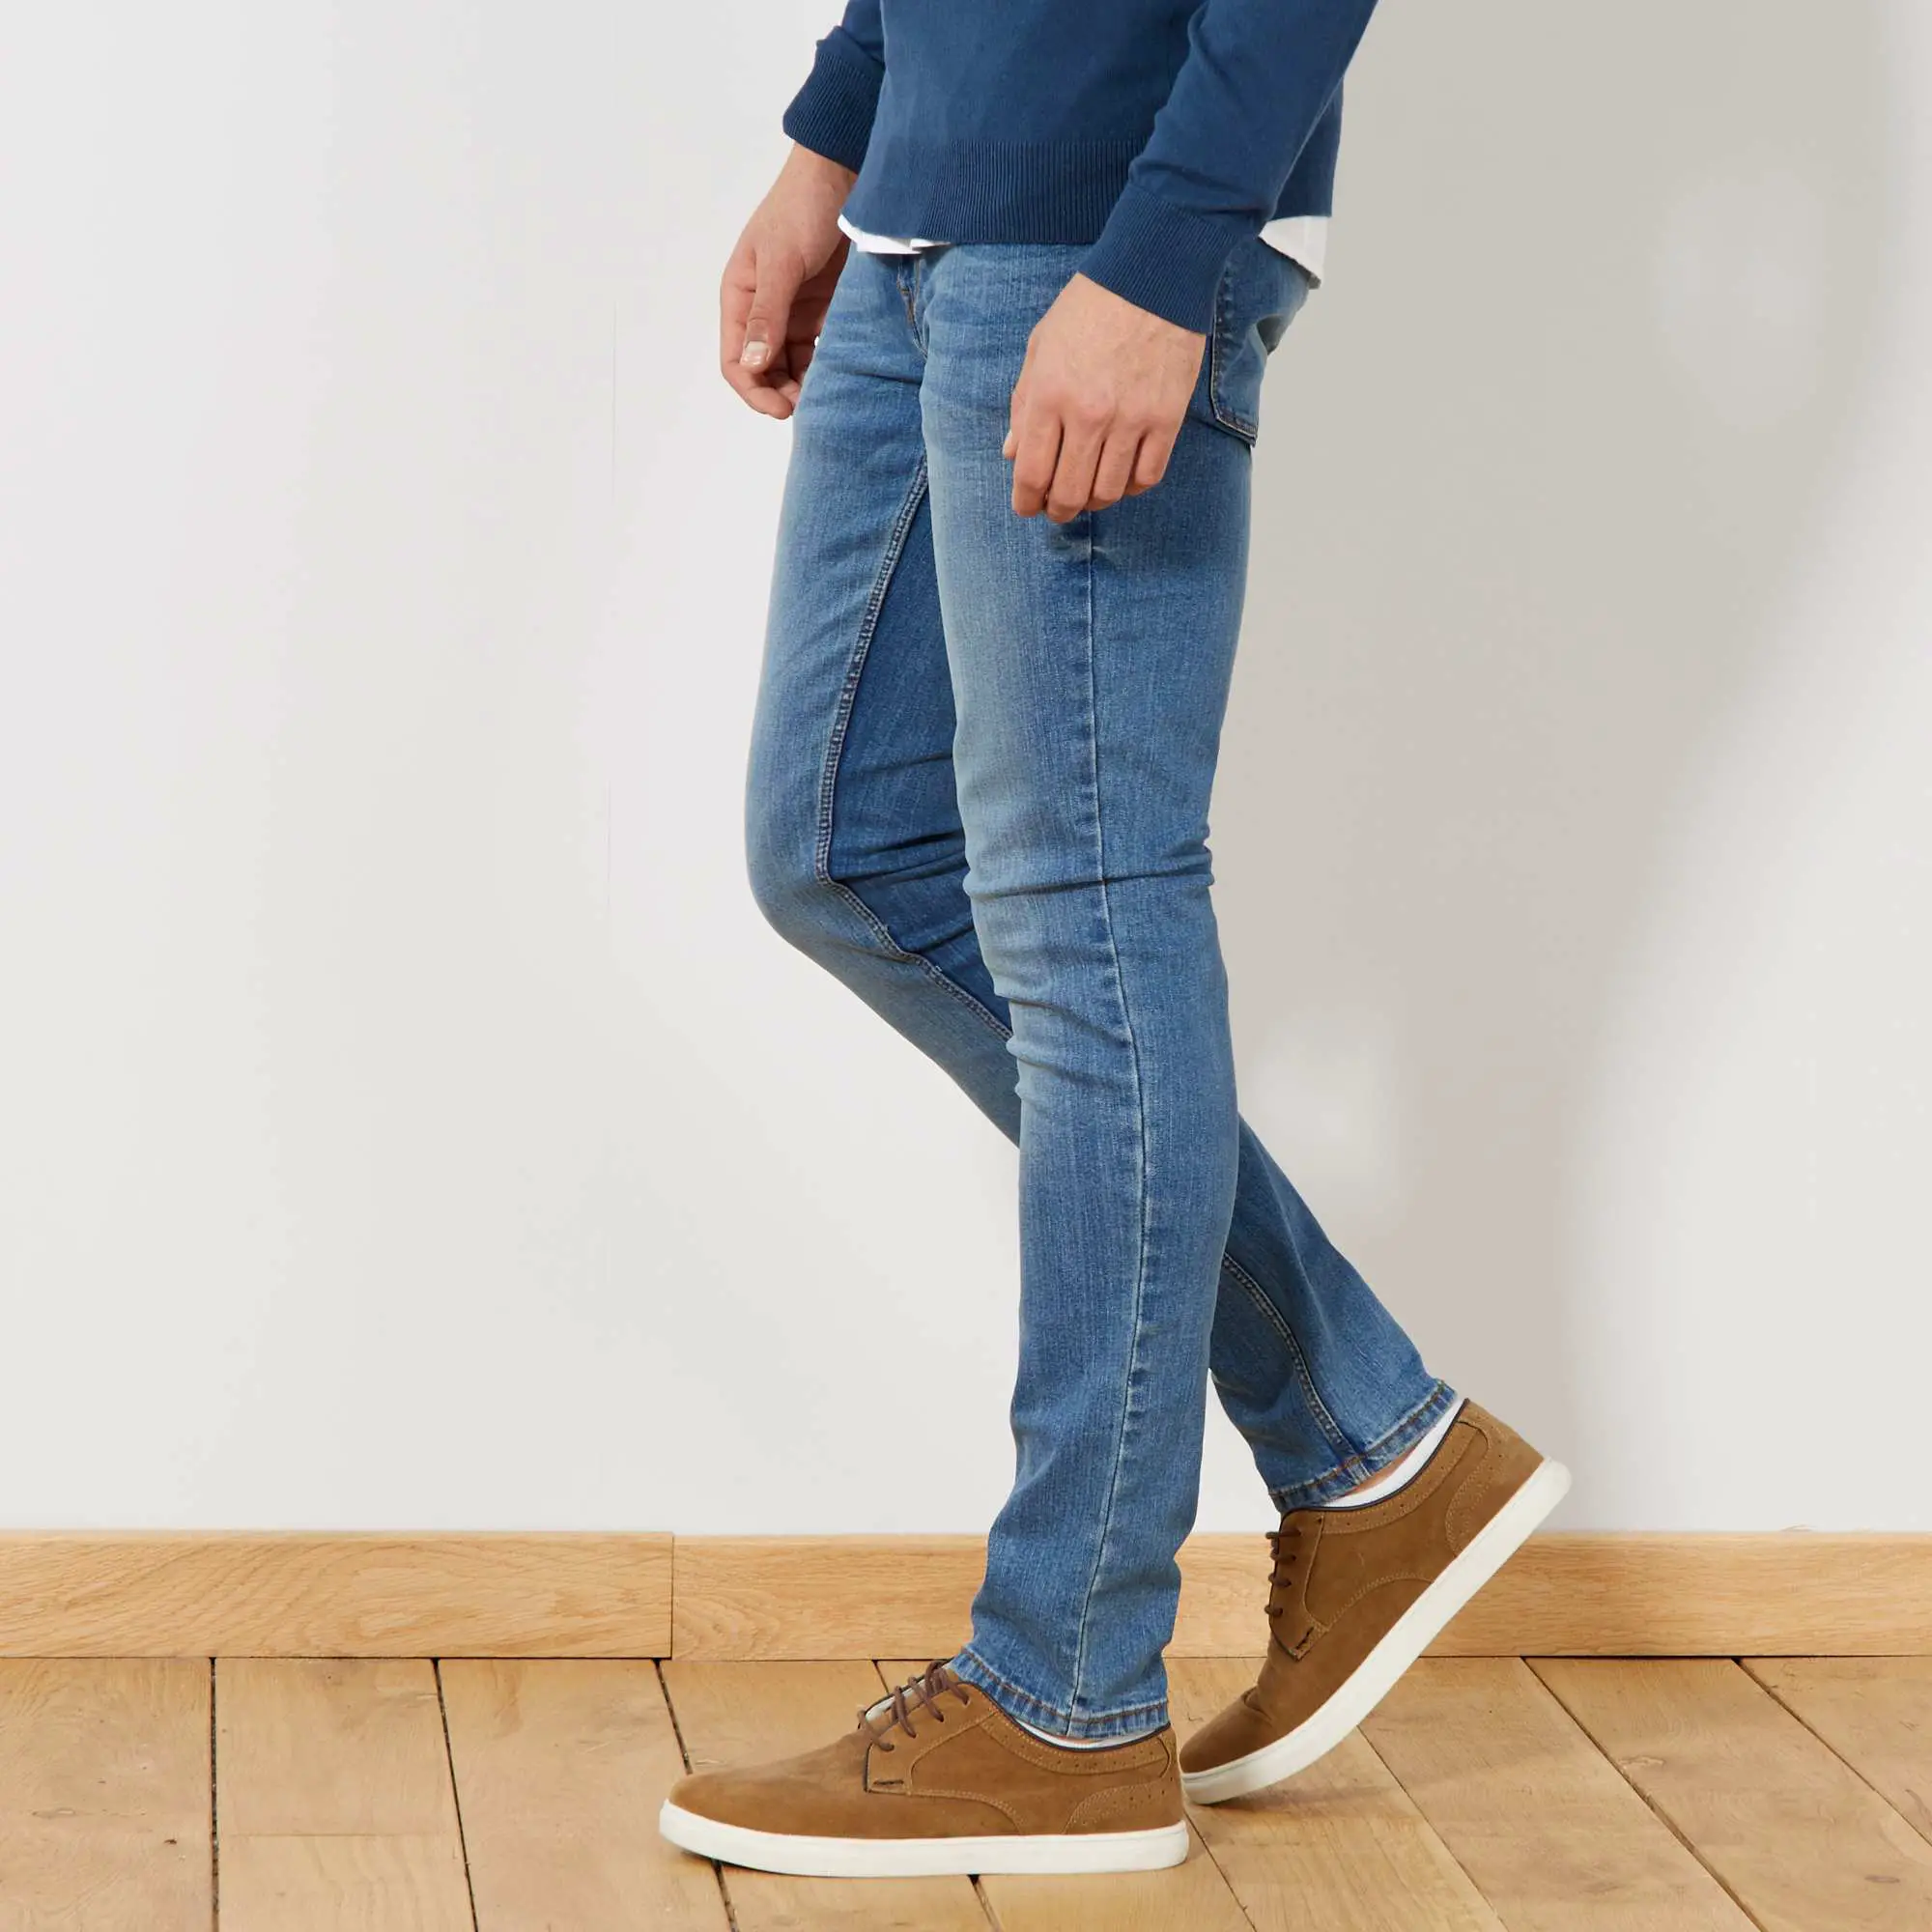 Quần jeans skinny có thể gây ra các vấn đề về sức khỏe